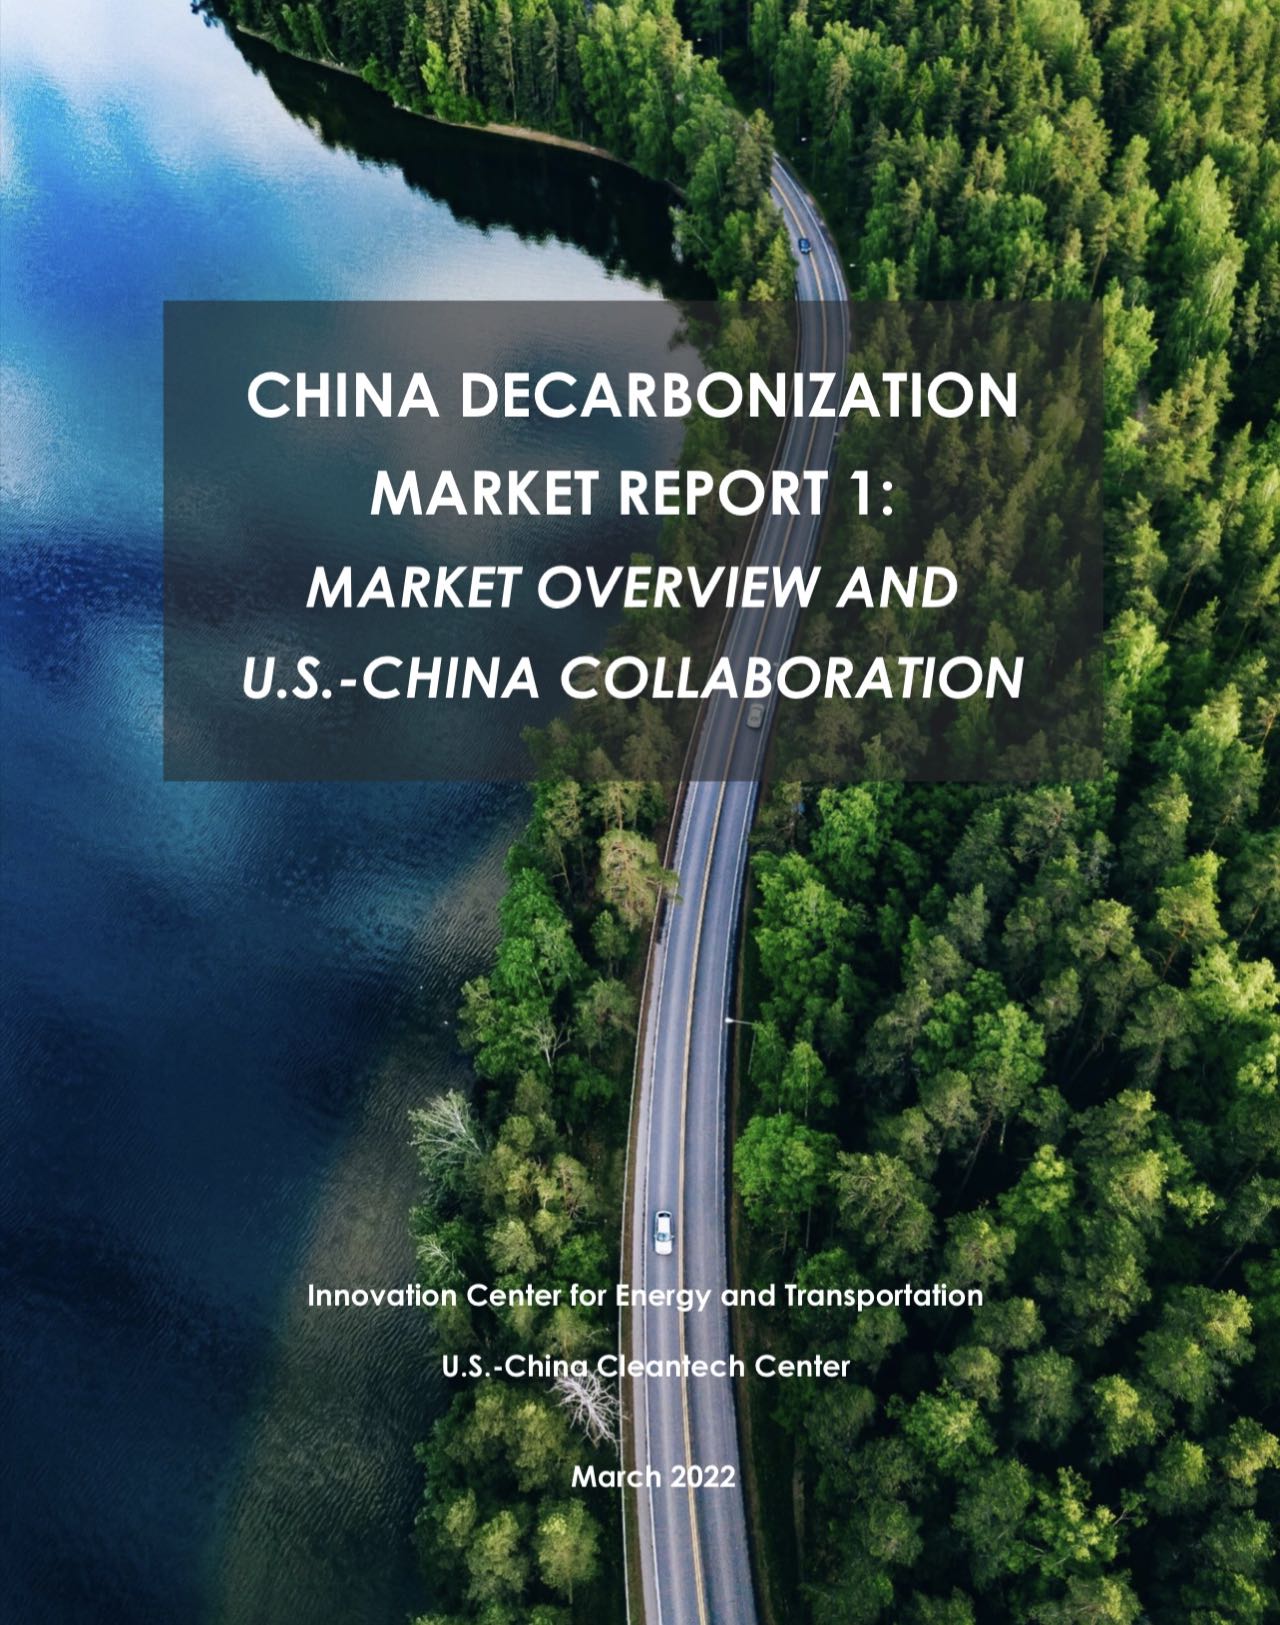 UCCTC 发布《中国脱碳市场报告：市场概况与中美合作》